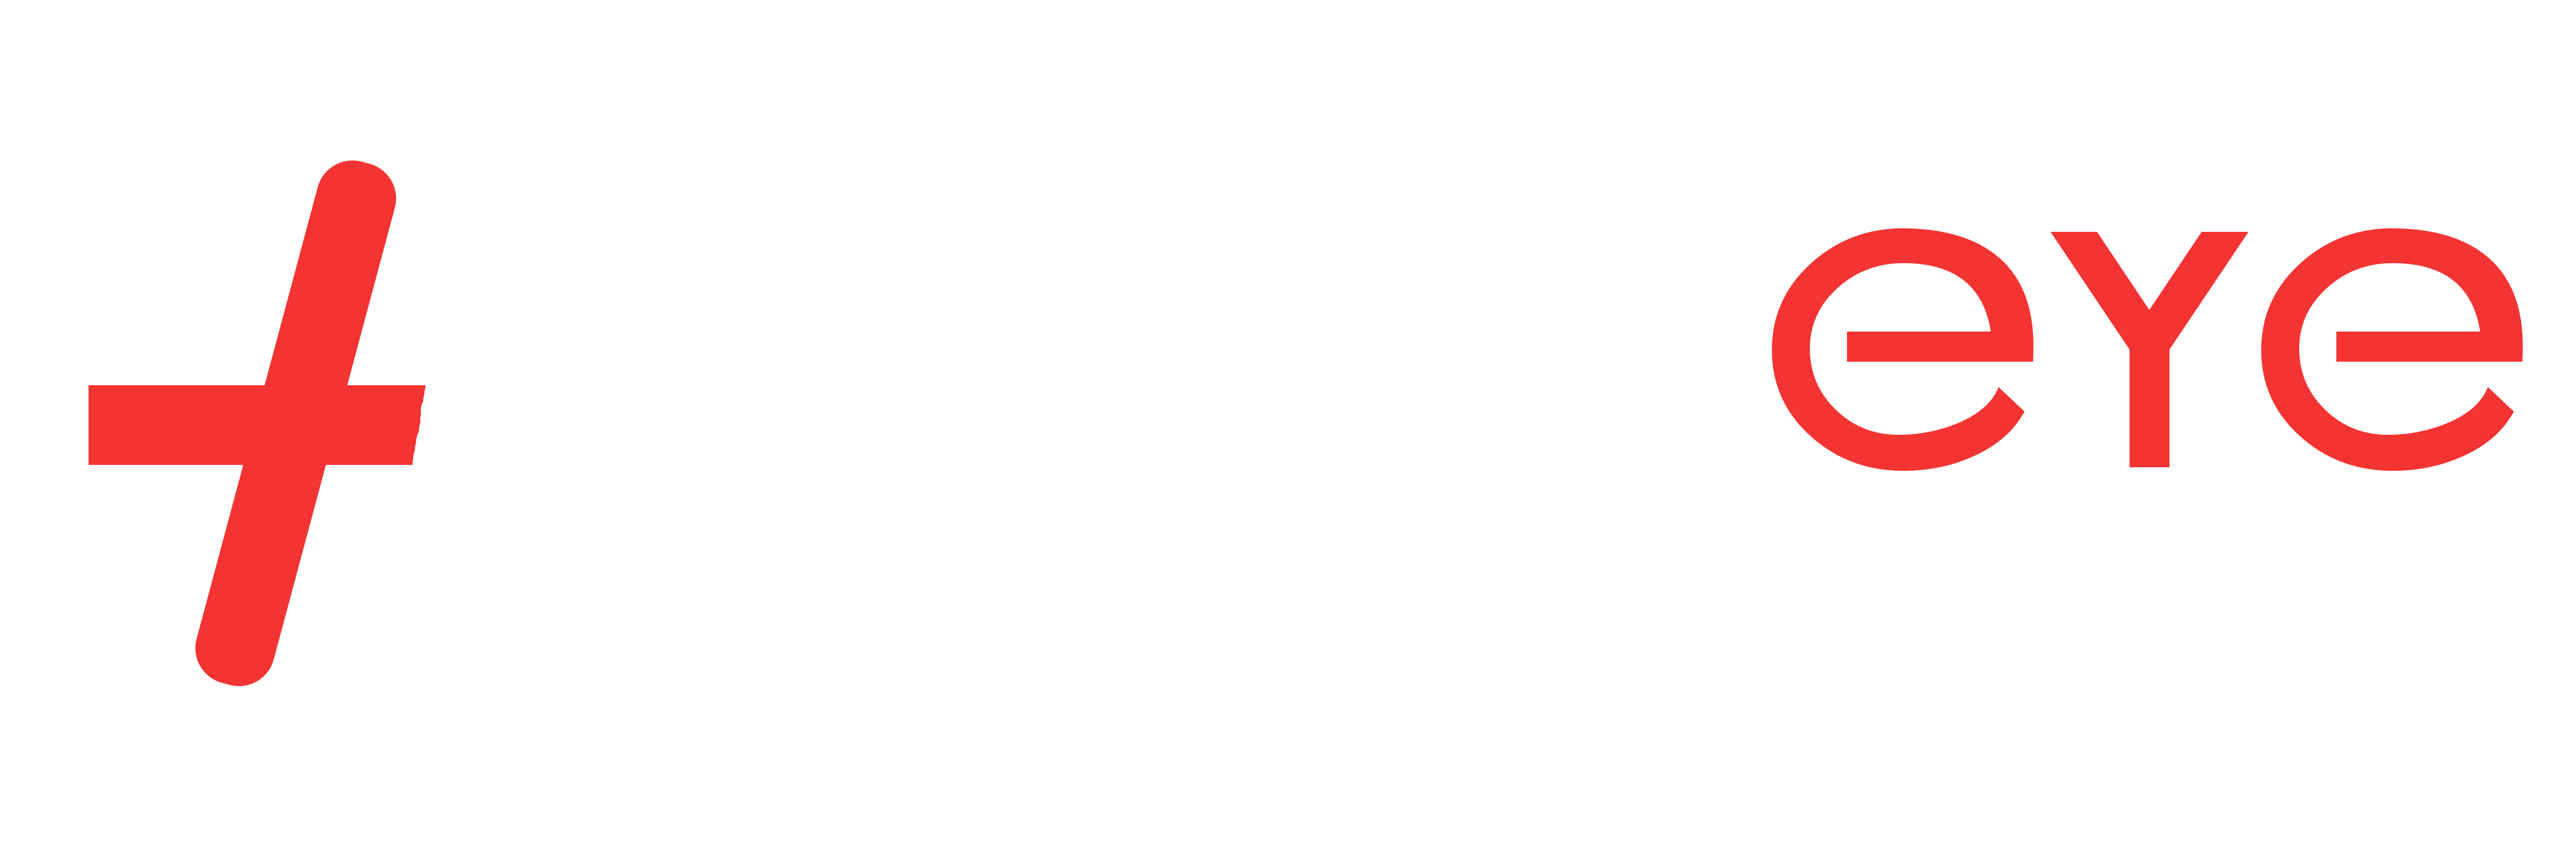 hawkeye digital creator marketing company